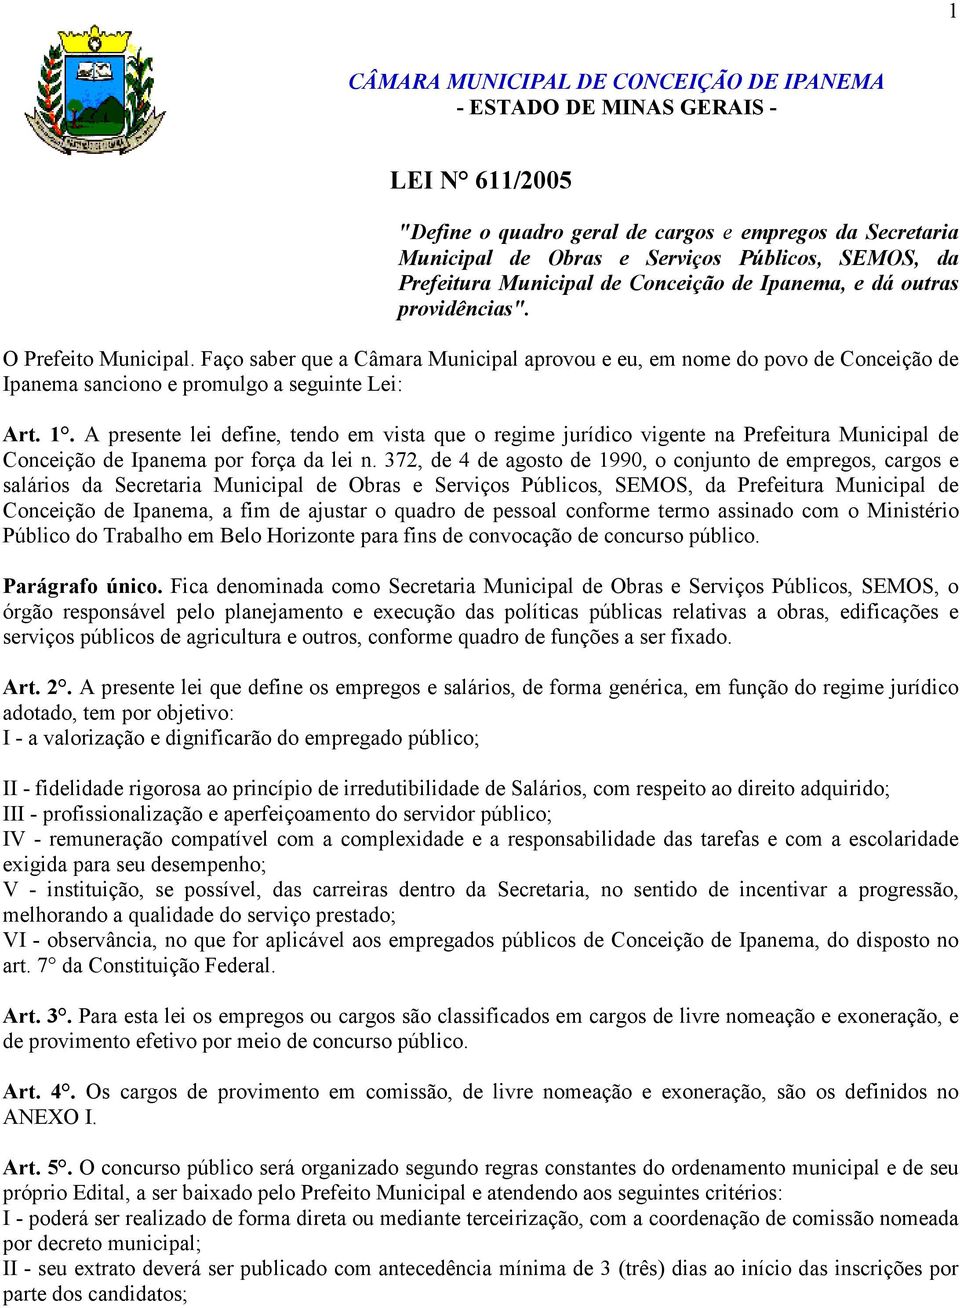 Faço saber que a Câmara Municipal aprovou e eu, em nome do povo de Conceição de Ipanema sanciono e promulgo a seguinte Lei: Art. 1.